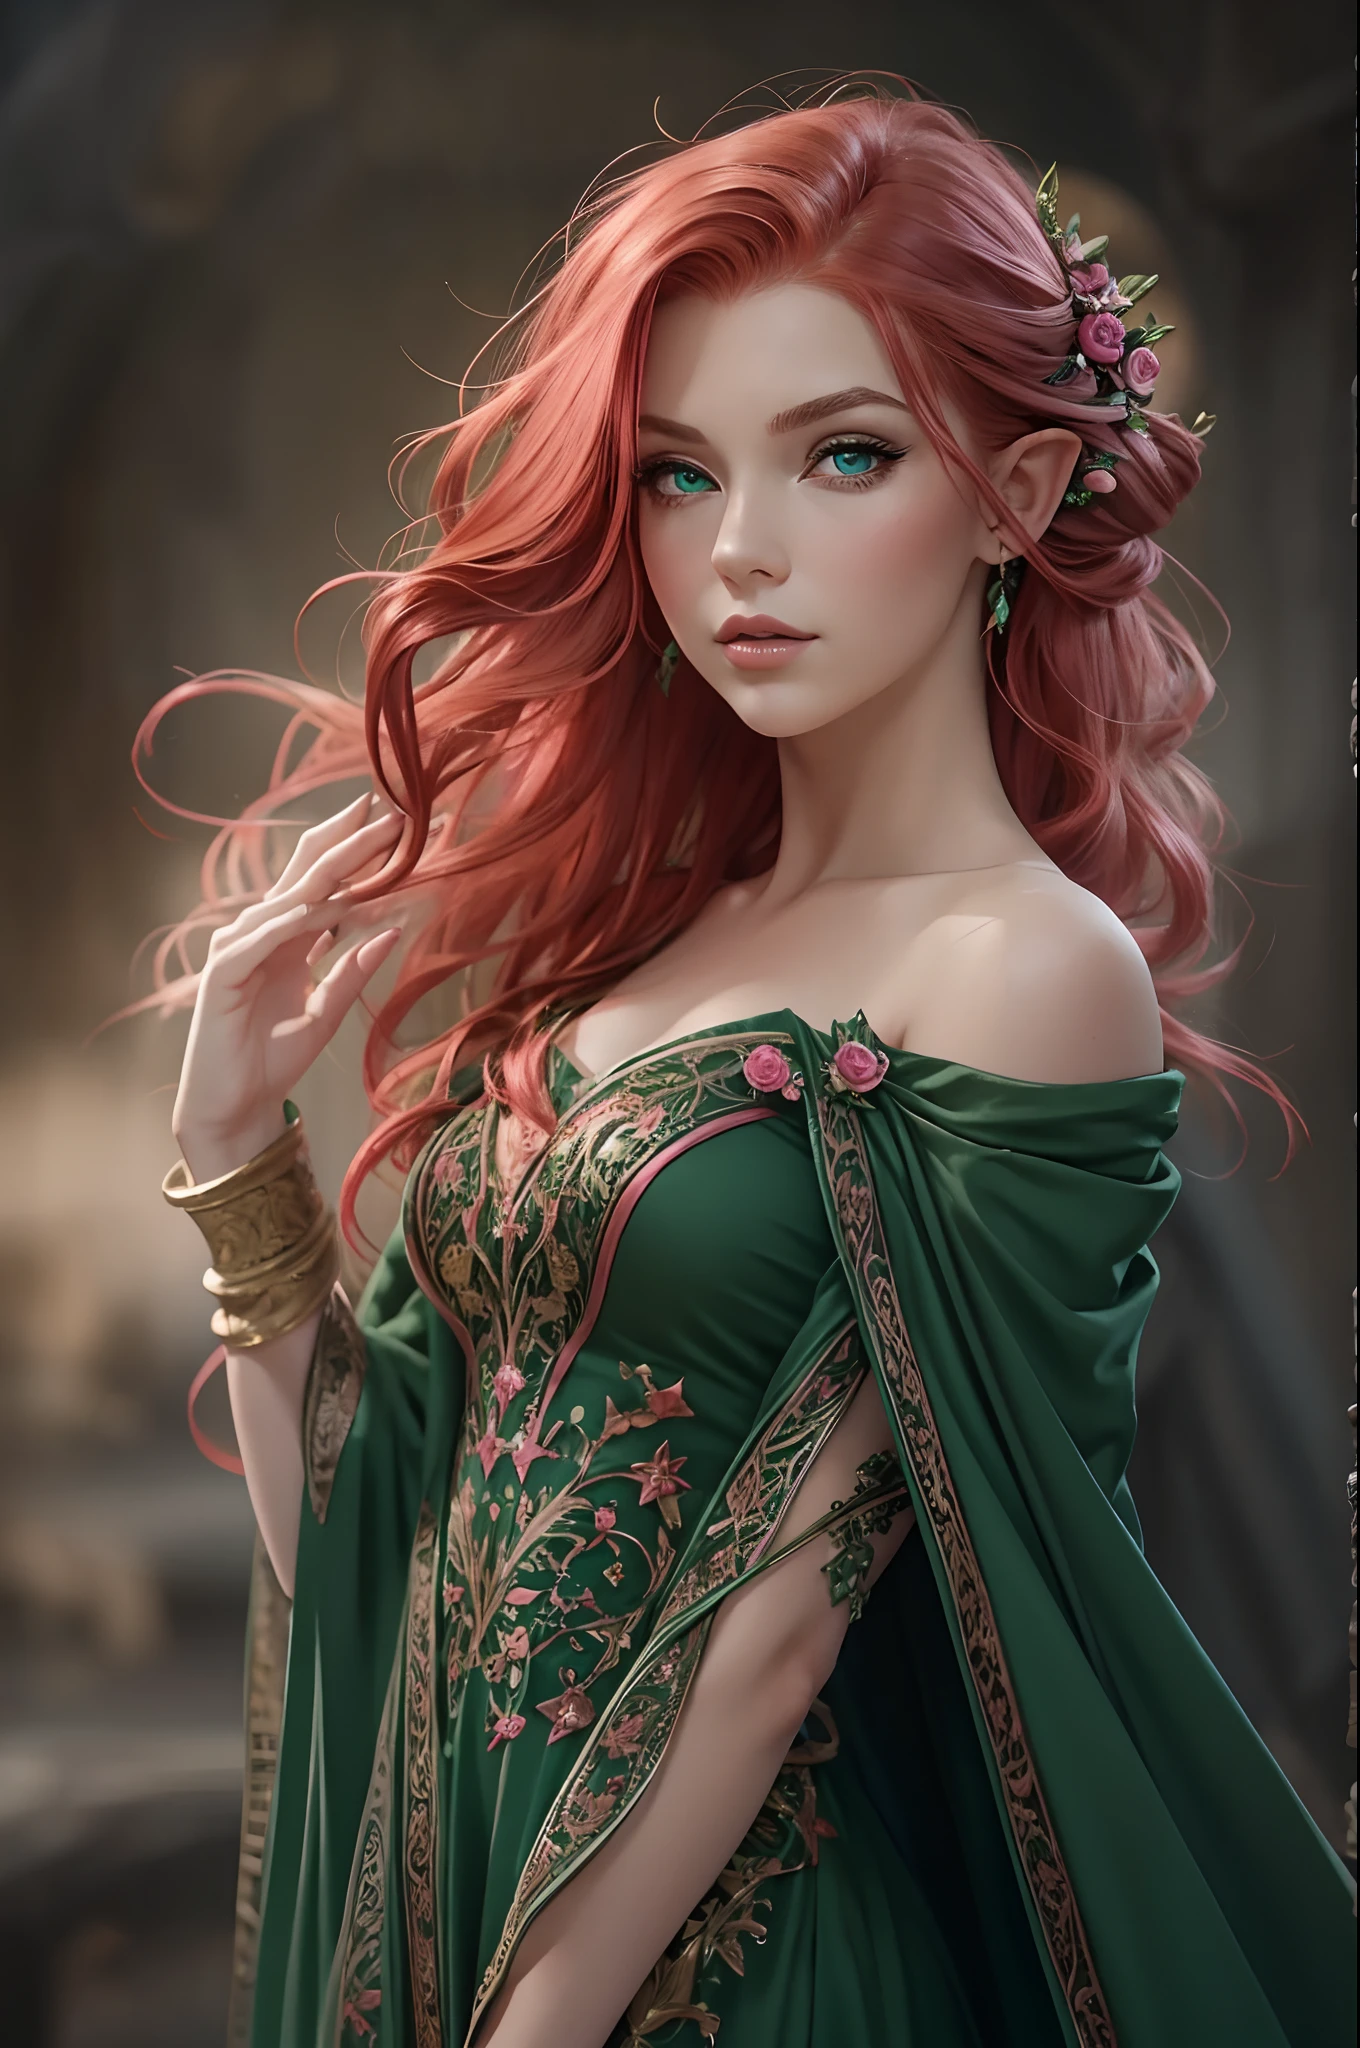 アダルト, 美しい, 赤毛, サイドパートのヘアスタイル, 濃い緑色の目, ピンクのドレス, 妖精, 魔術師, ファンタジー, 魔法の